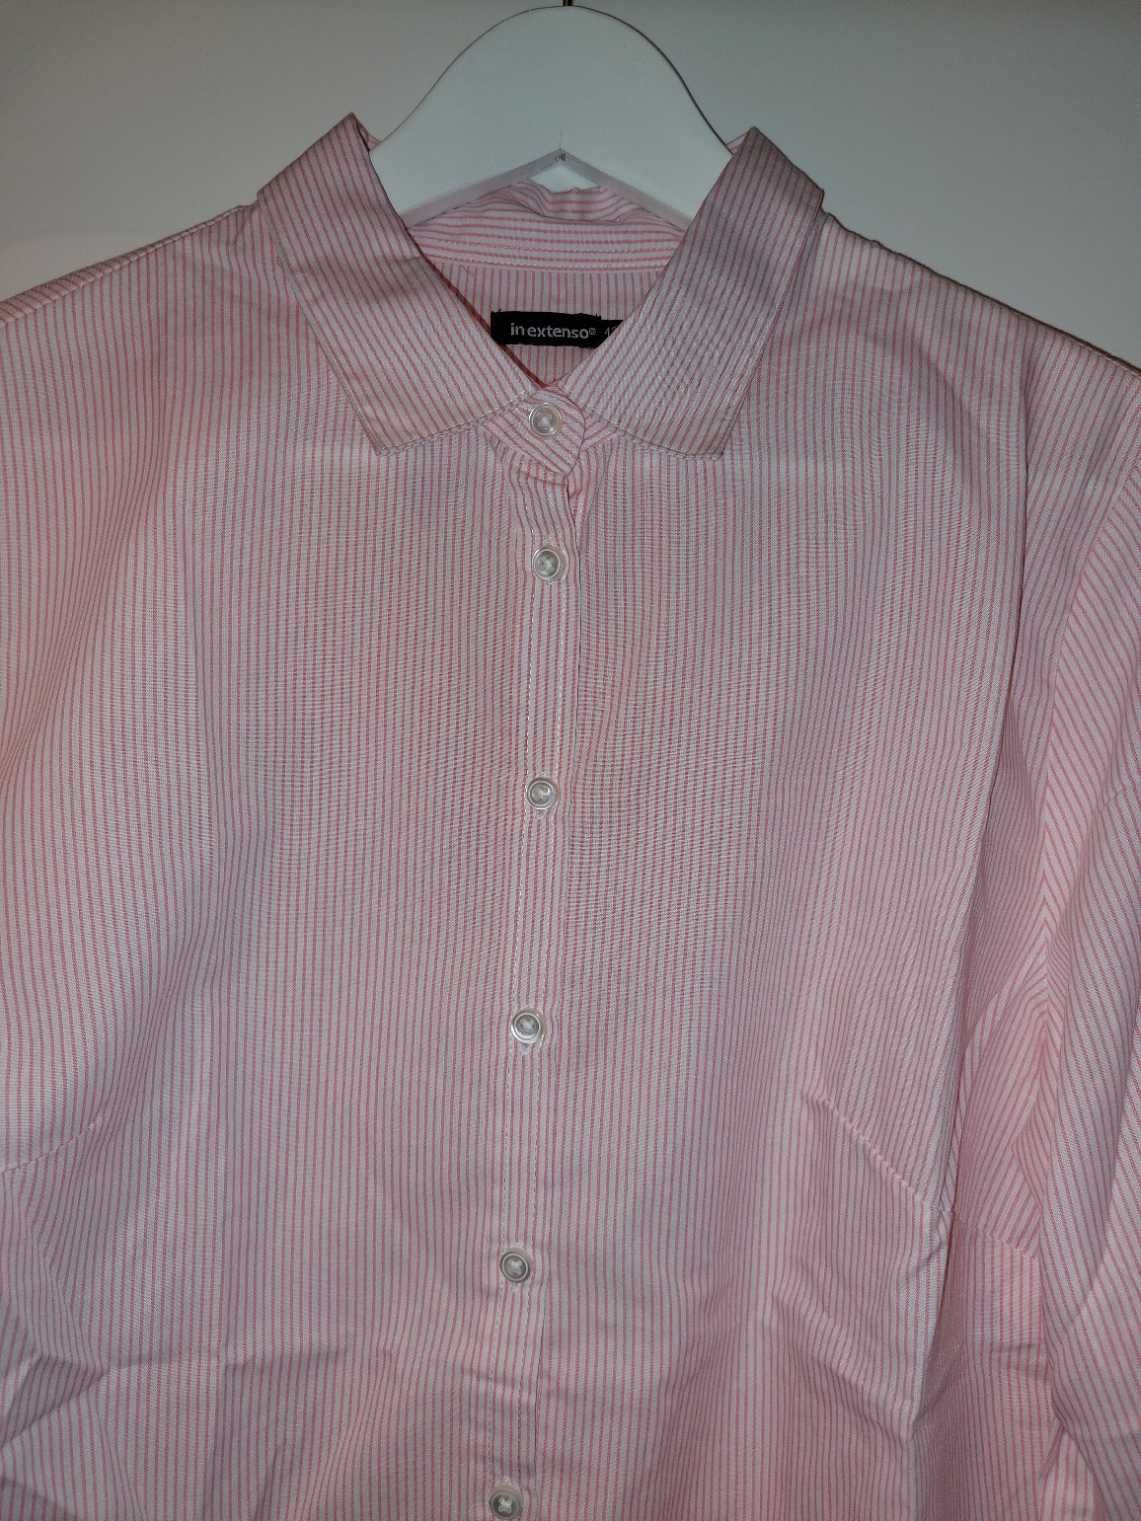 Koszula biała różowa paski prążki 42/XL